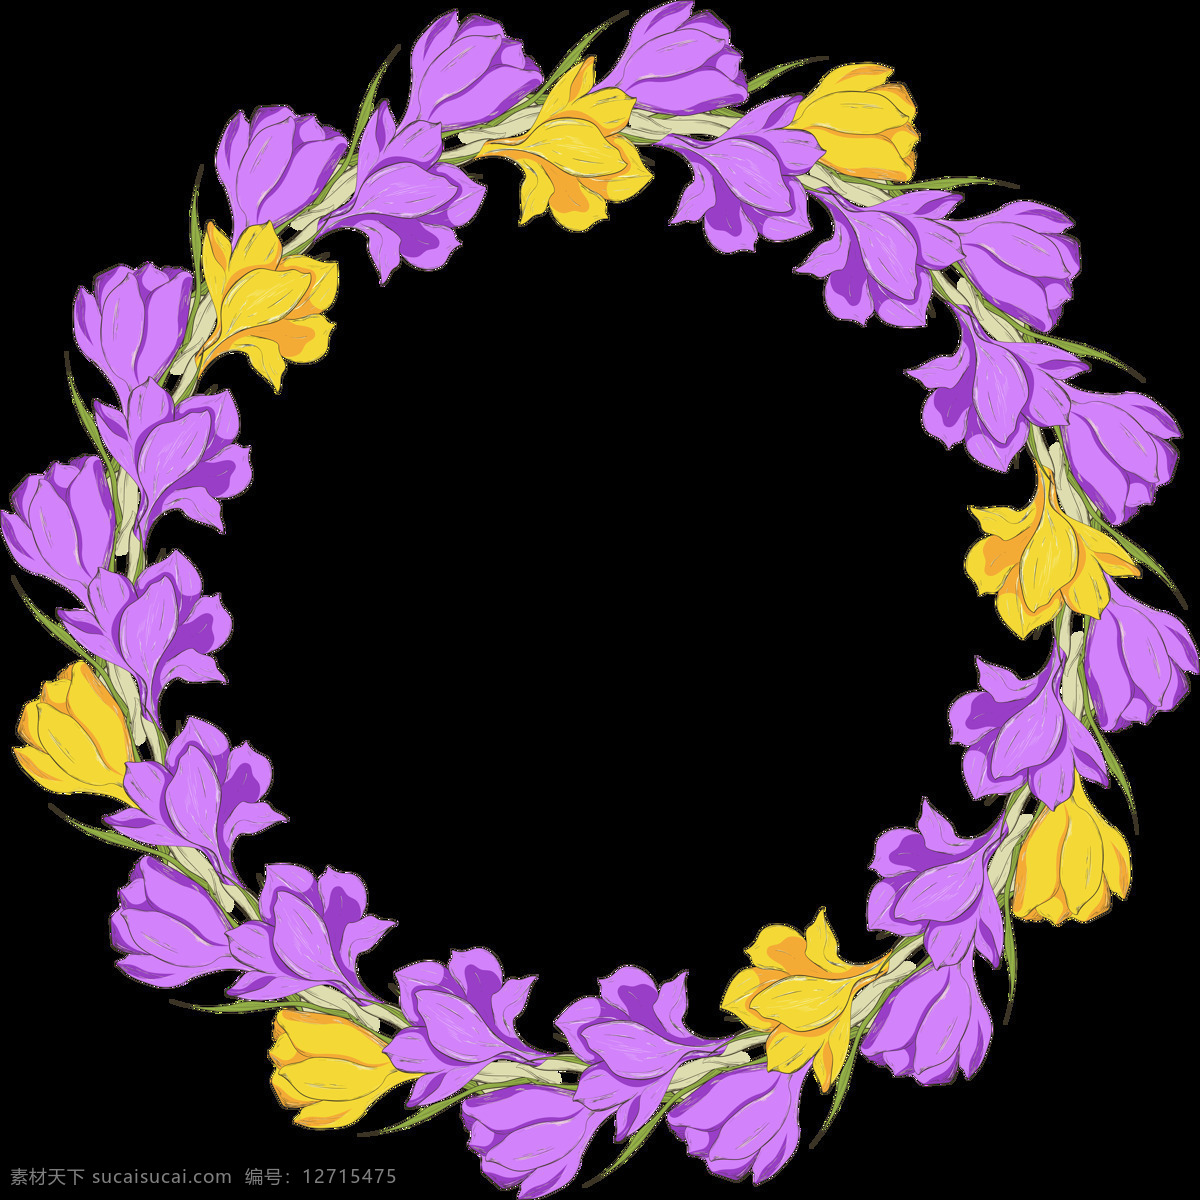 淡雅 美丽 紫 黄双 色 花环 透明 花朵 黄色 平面素材 设计素材 矢量素材 圆环 紫色